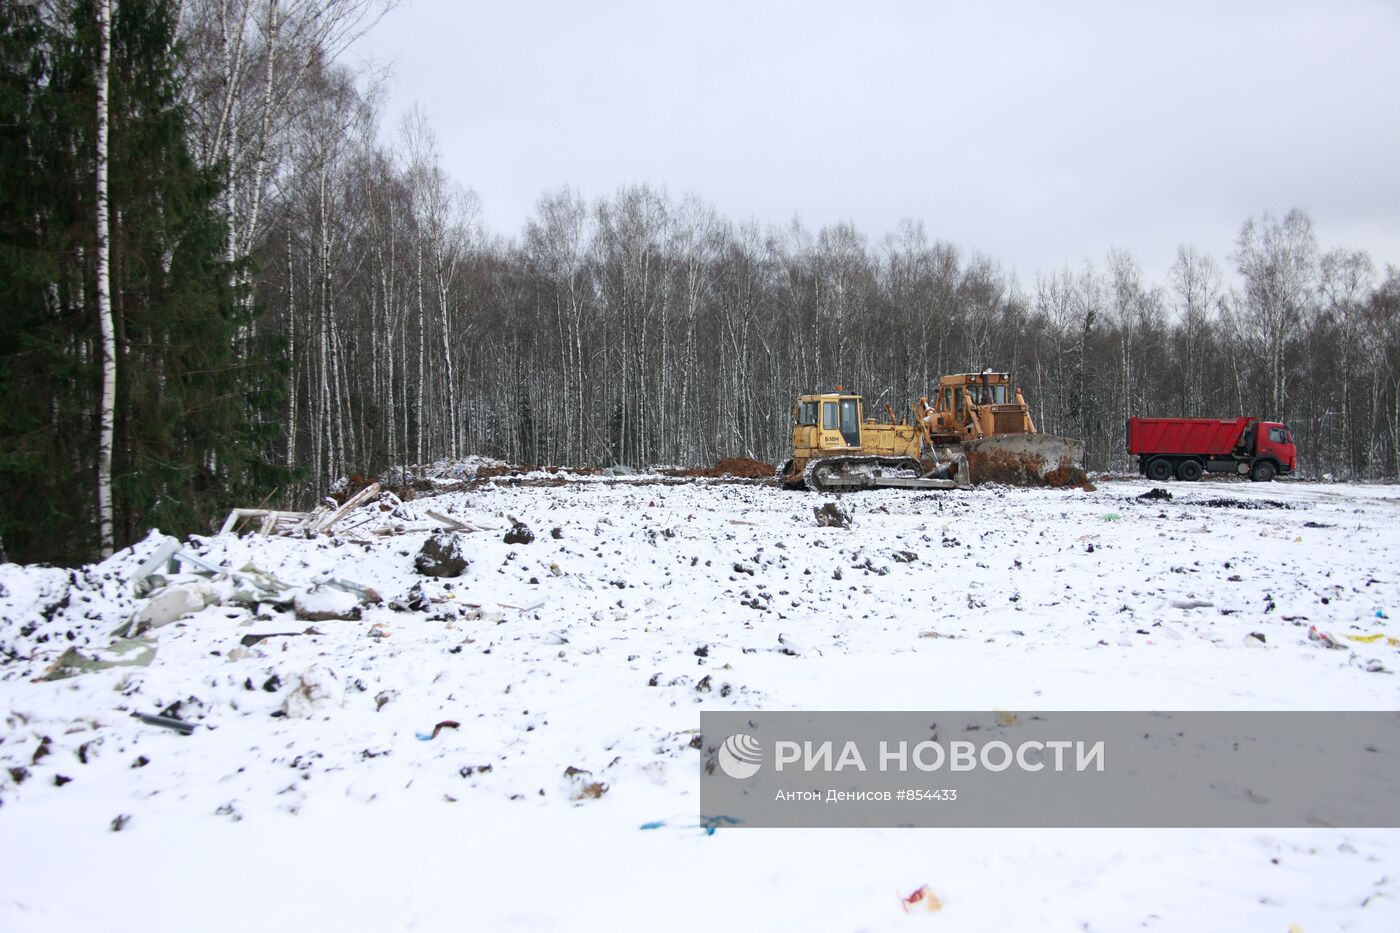 Место будущего строительства автотрассы в Химкинском лесу